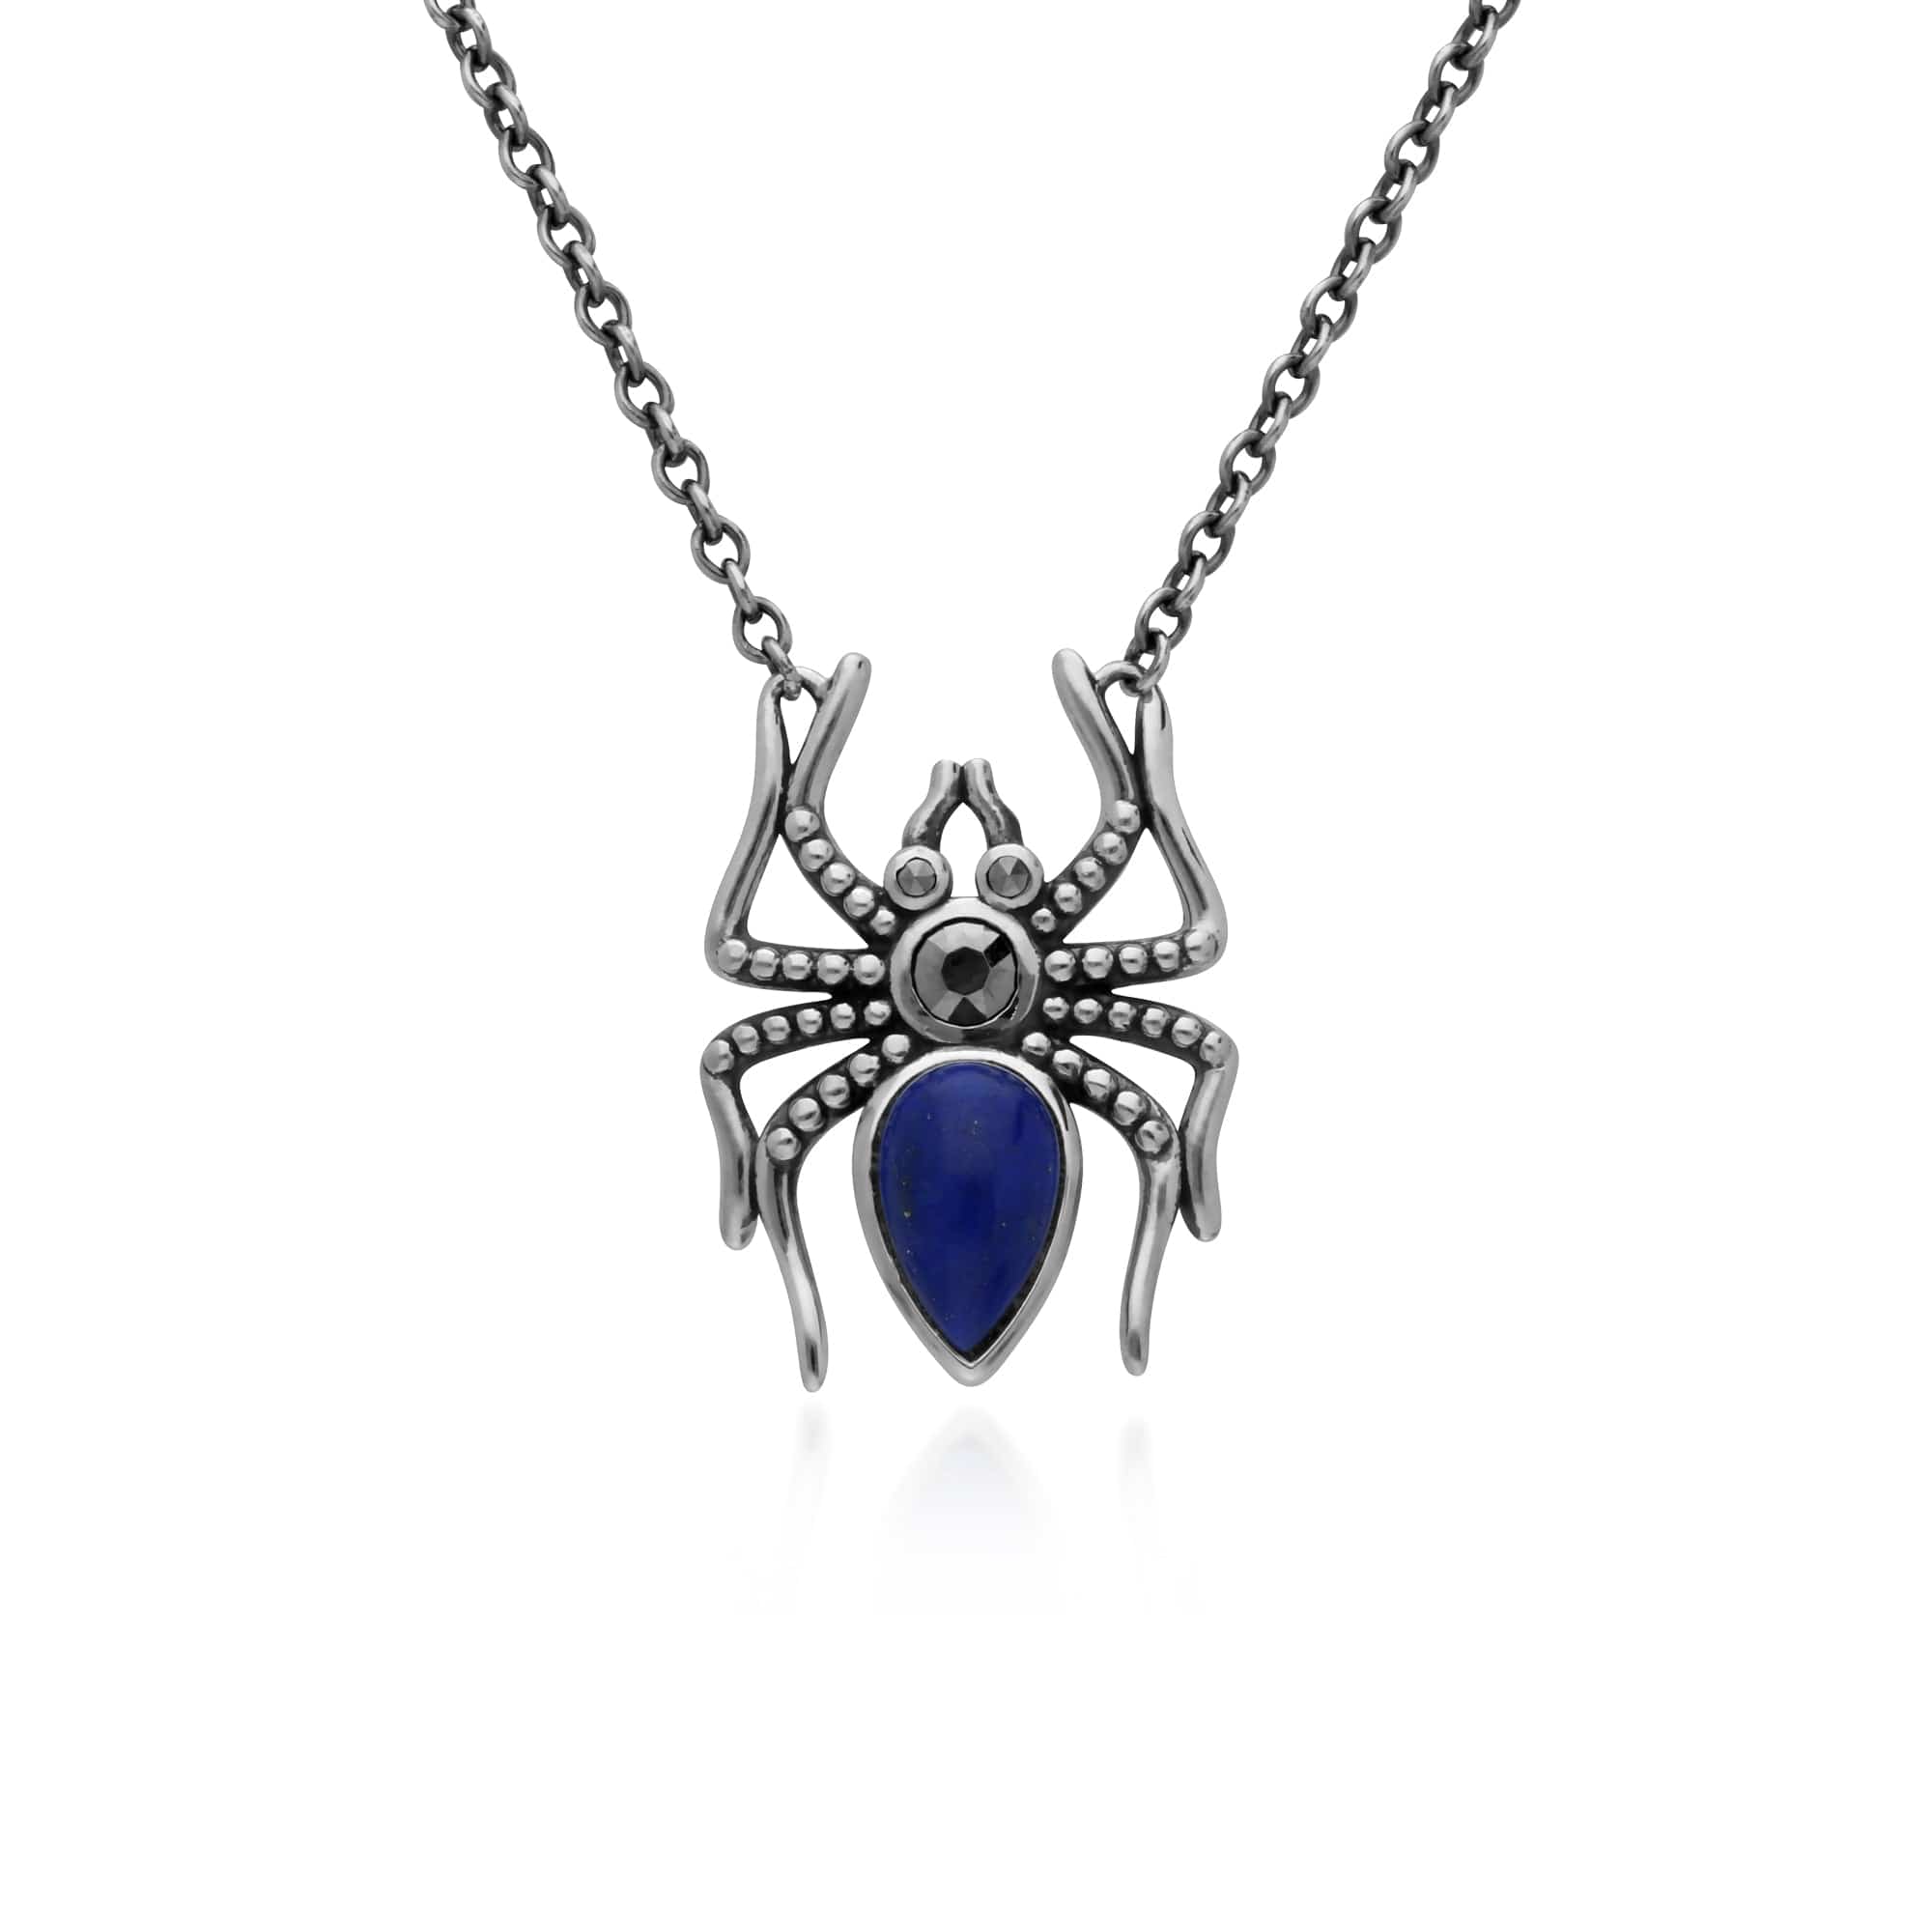 Gemondo Sterling Silver Lapis Lazuli & Marcasite Spider 45cm Necklace - Gemondo